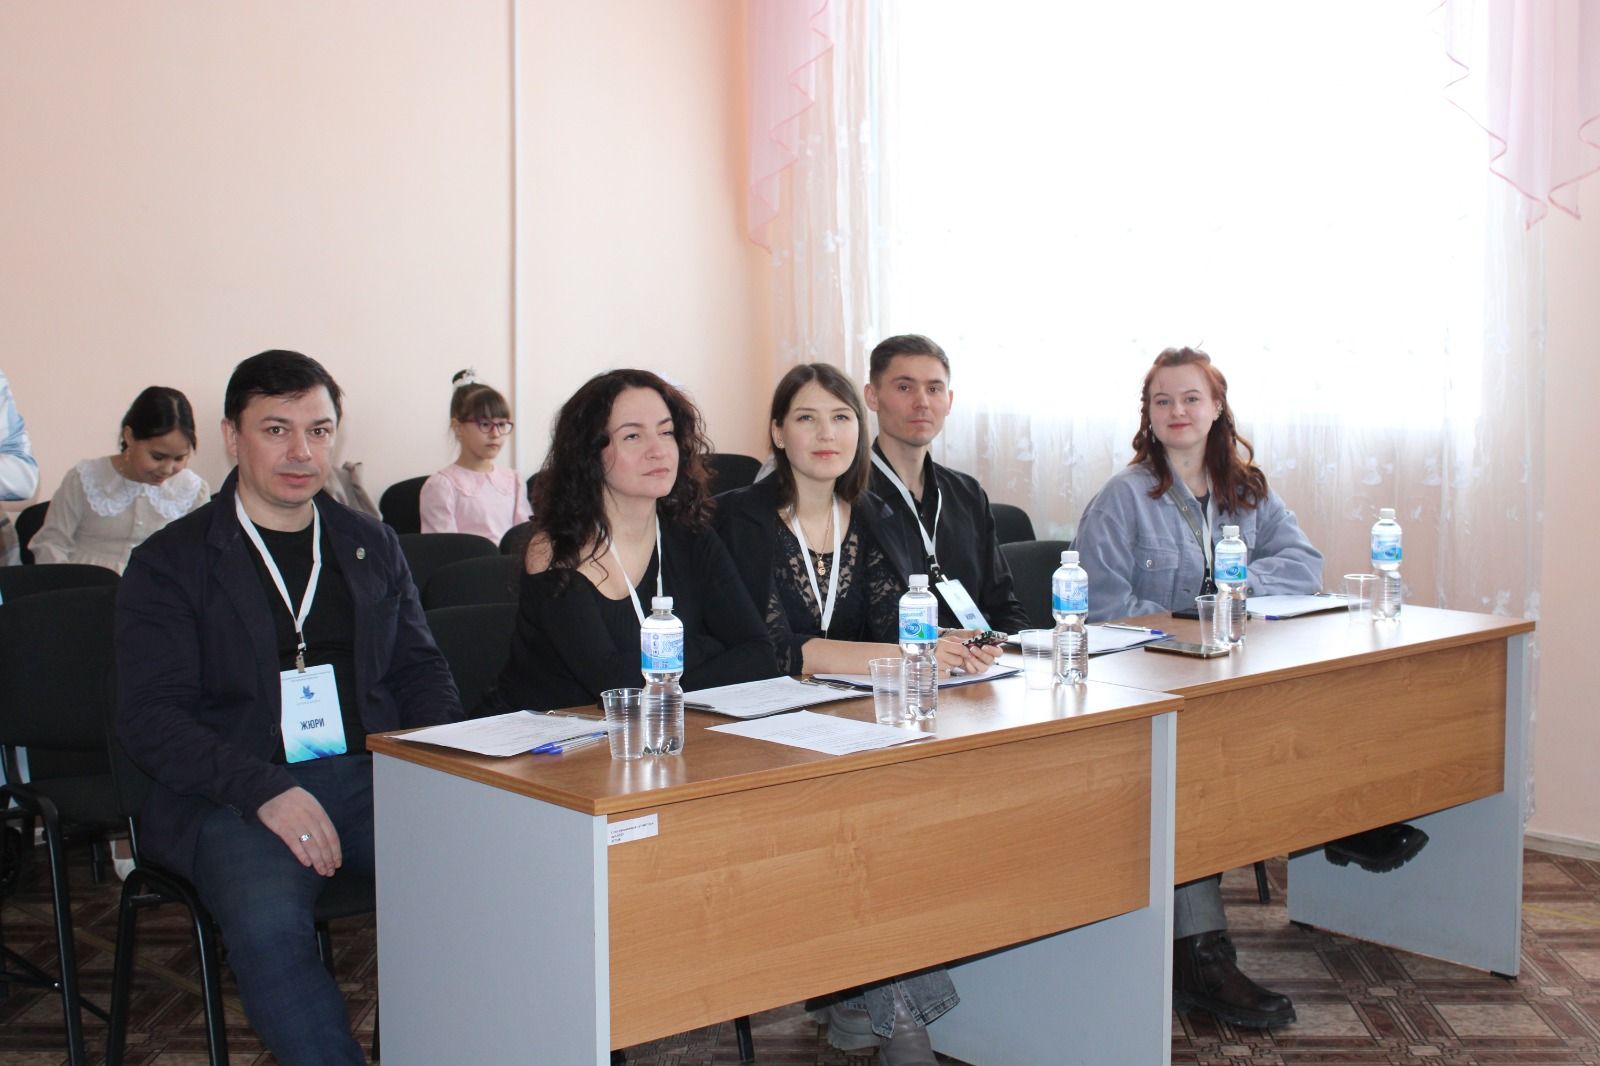 В Азнакаево состоялось открытие форума Благотворительного фонда развития исполнительского искусства РТ  «Усилие»